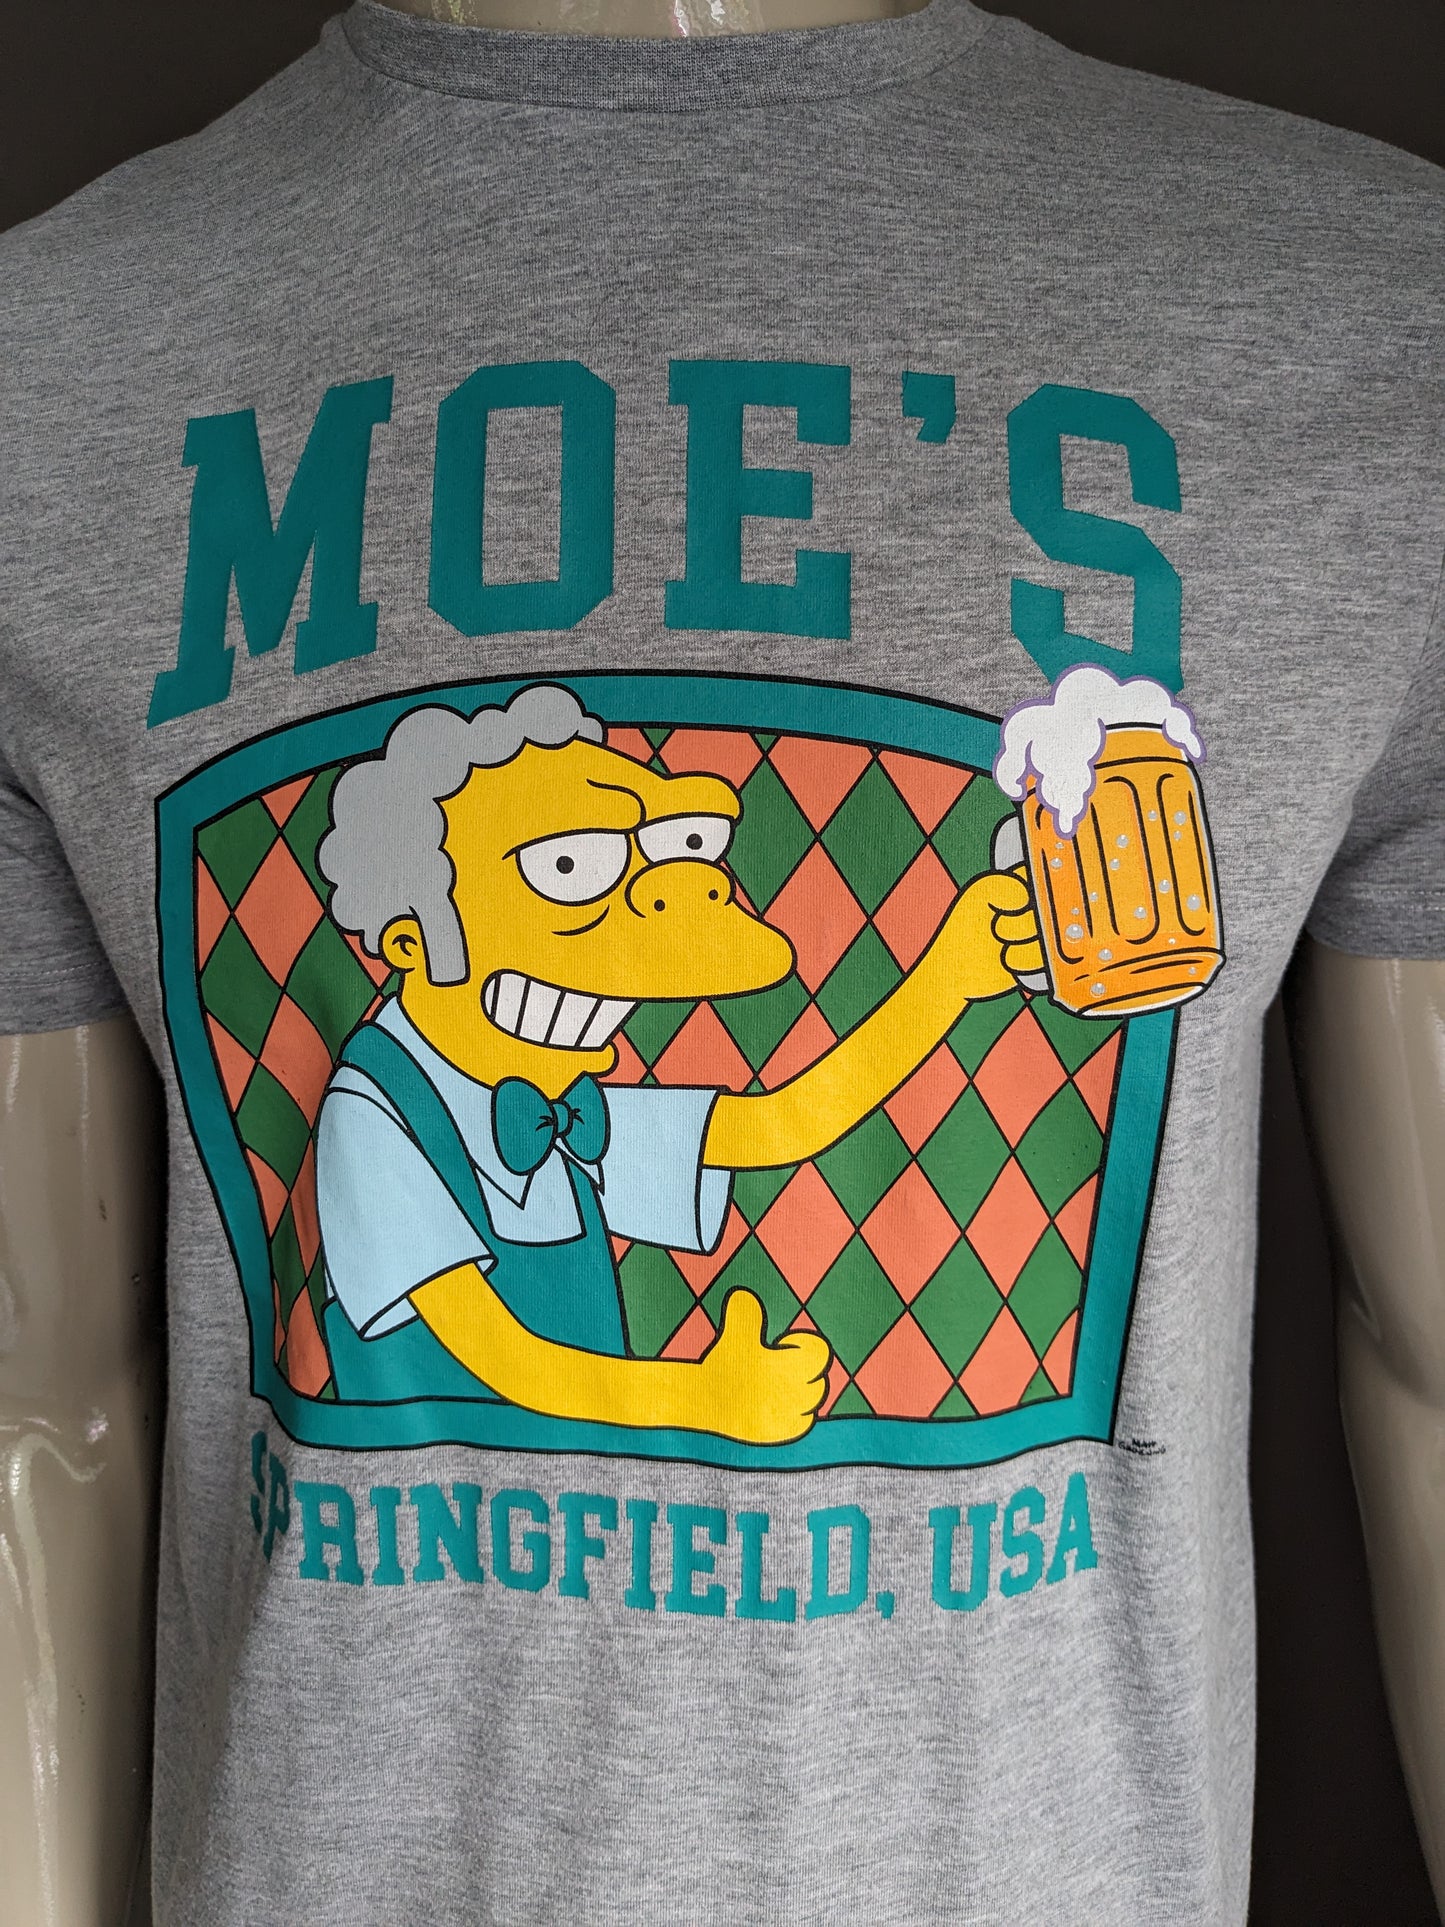 The Simpson's original 80's shirt. Grijs gemêleerd met Moe's opdruk. Maat L.